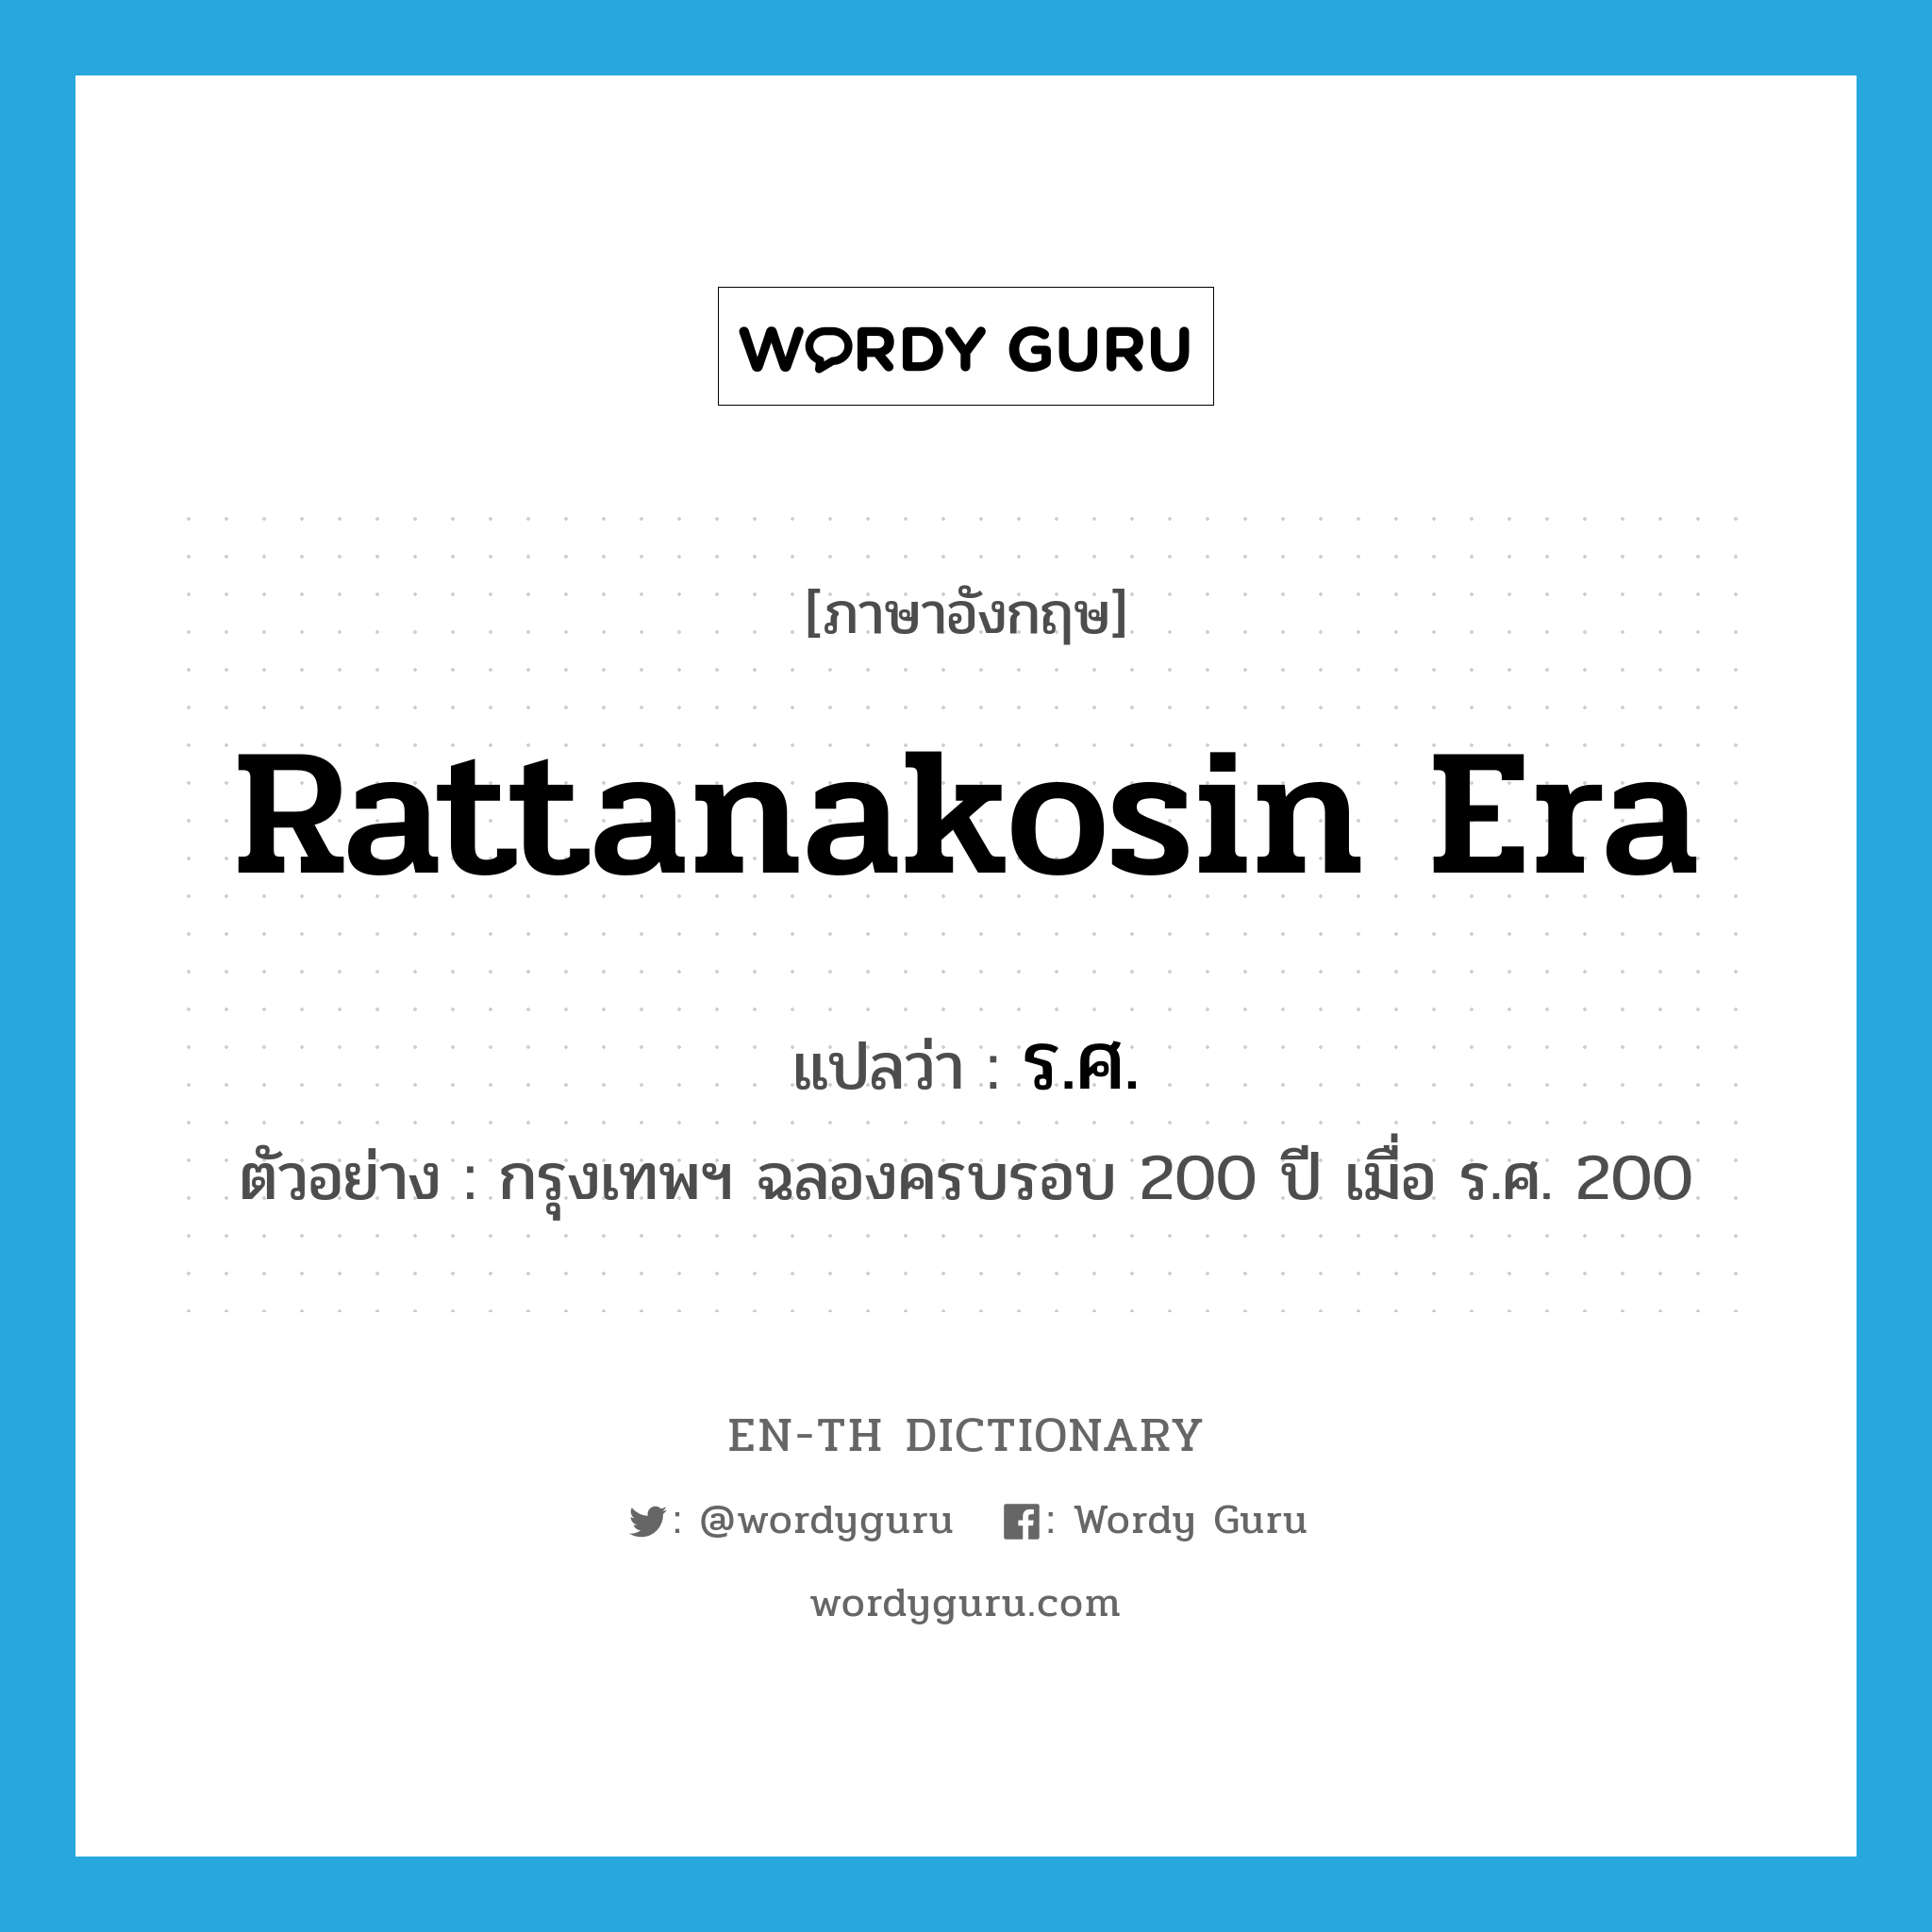 Rattanakosin era แปลว่า?, คำศัพท์ภาษาอังกฤษ Rattanakosin era แปลว่า ร.ศ. ประเภท N ตัวอย่าง กรุงเทพฯ ฉลองครบรอบ 200 ปี เมื่อ ร.ศ. 200 หมวด N